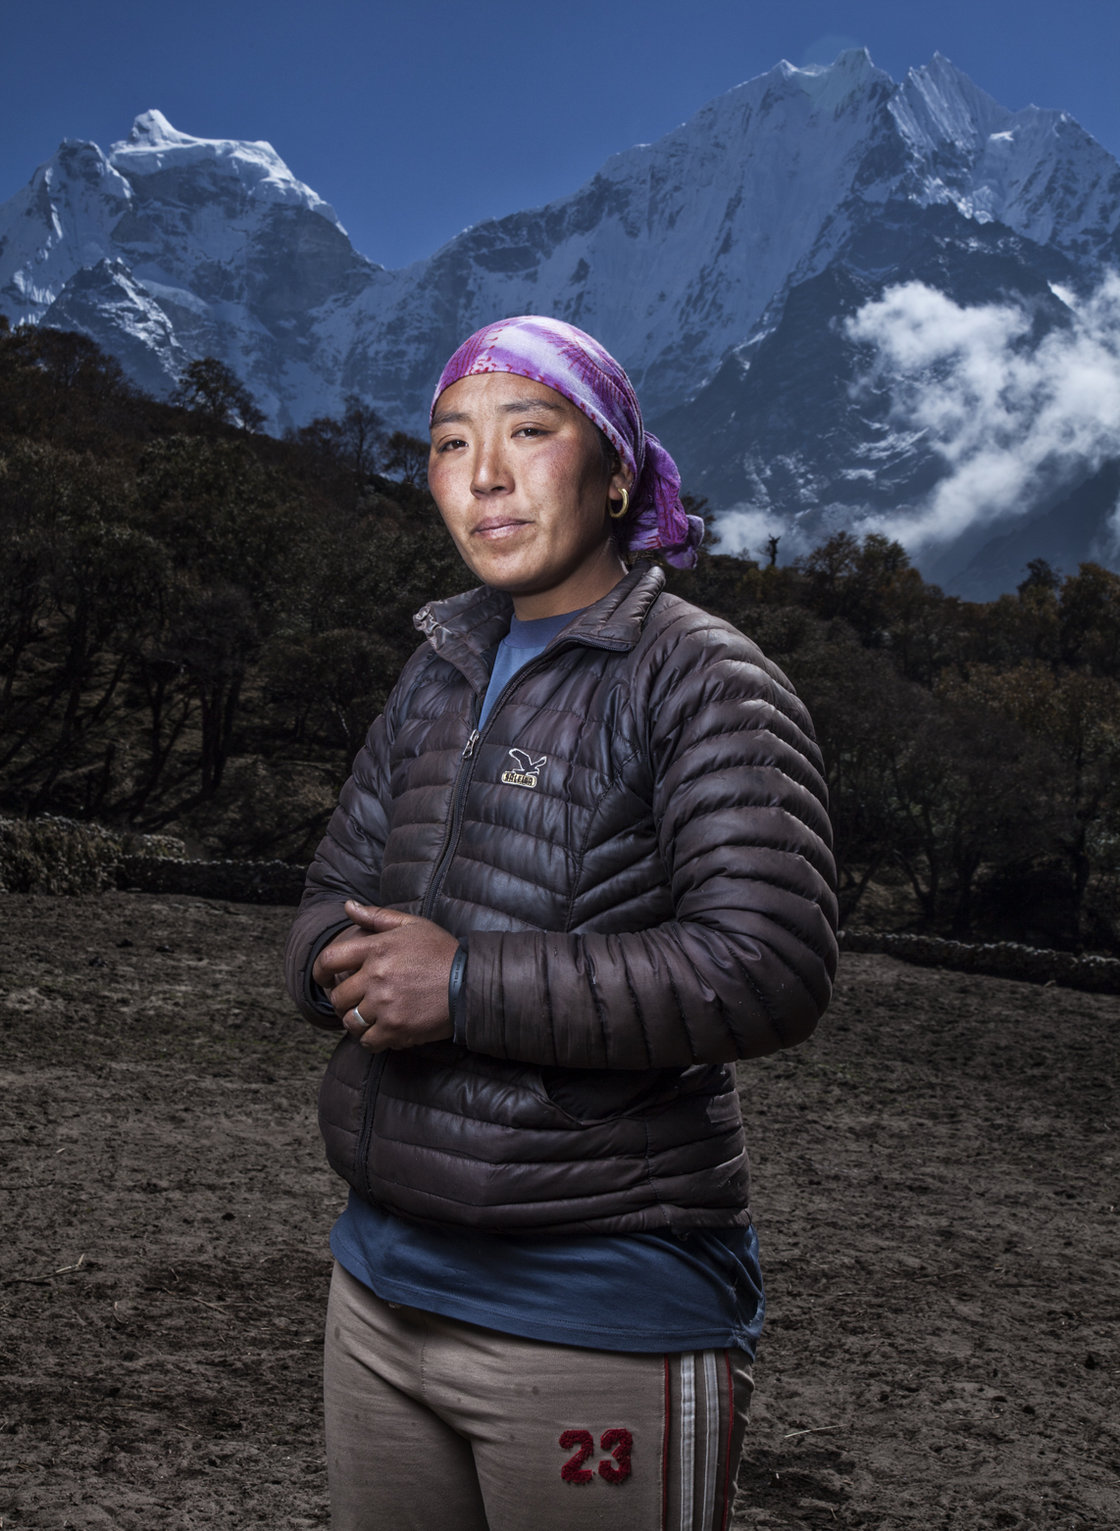 Jangmu потеряла мужа, Даву Тенцинга, который перенес инсульт в лагере 1 на Эвересте во время работы на иностранную экспедицию